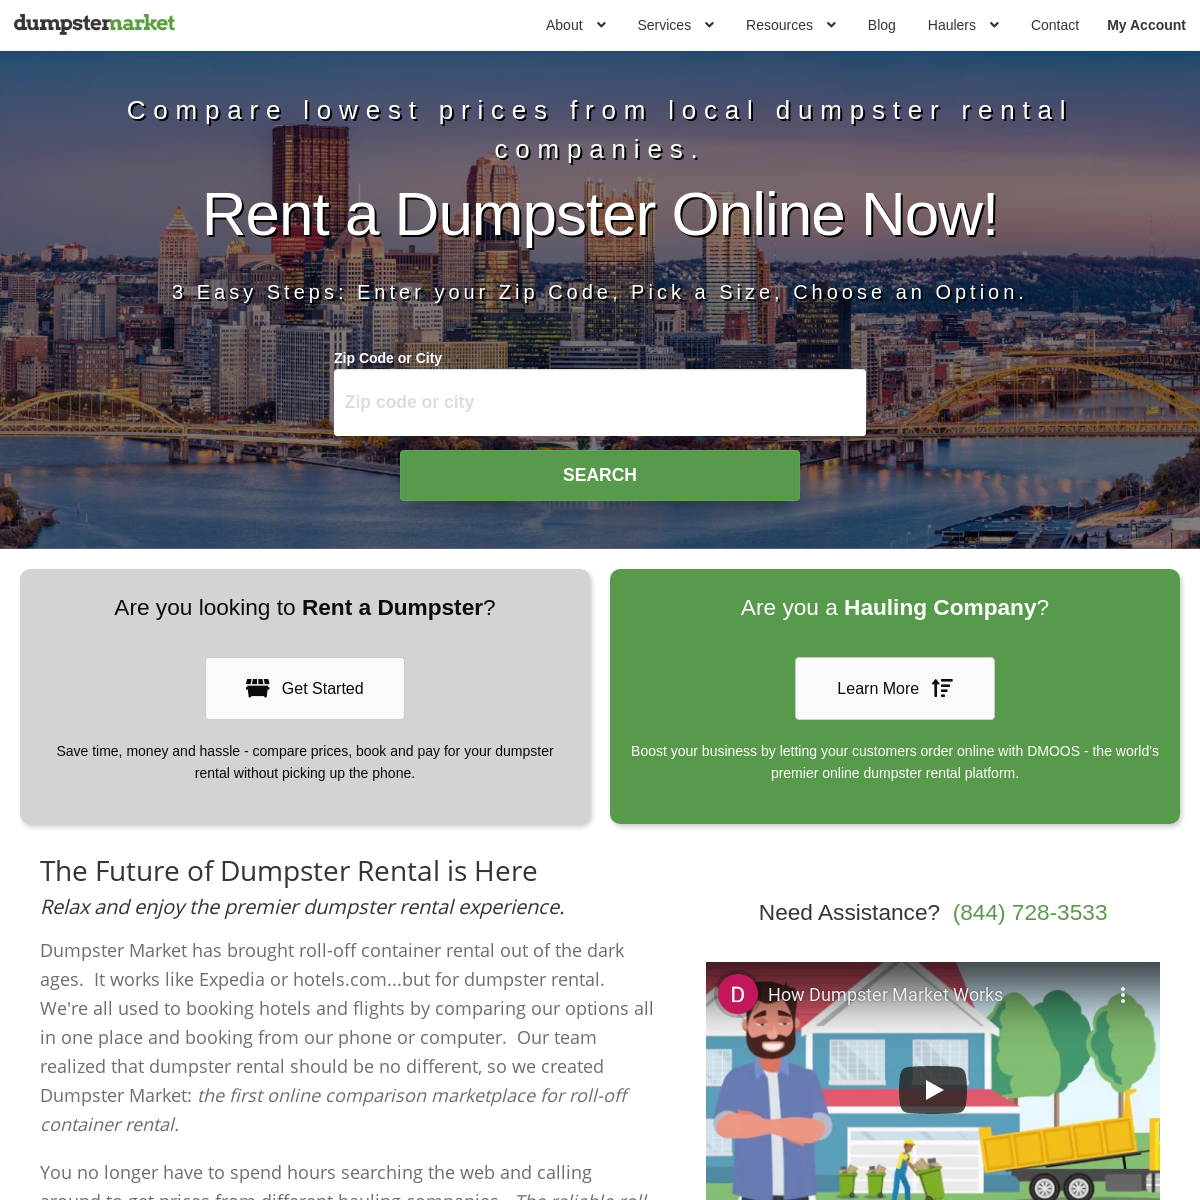 A complete backup of dumpstermarket.com